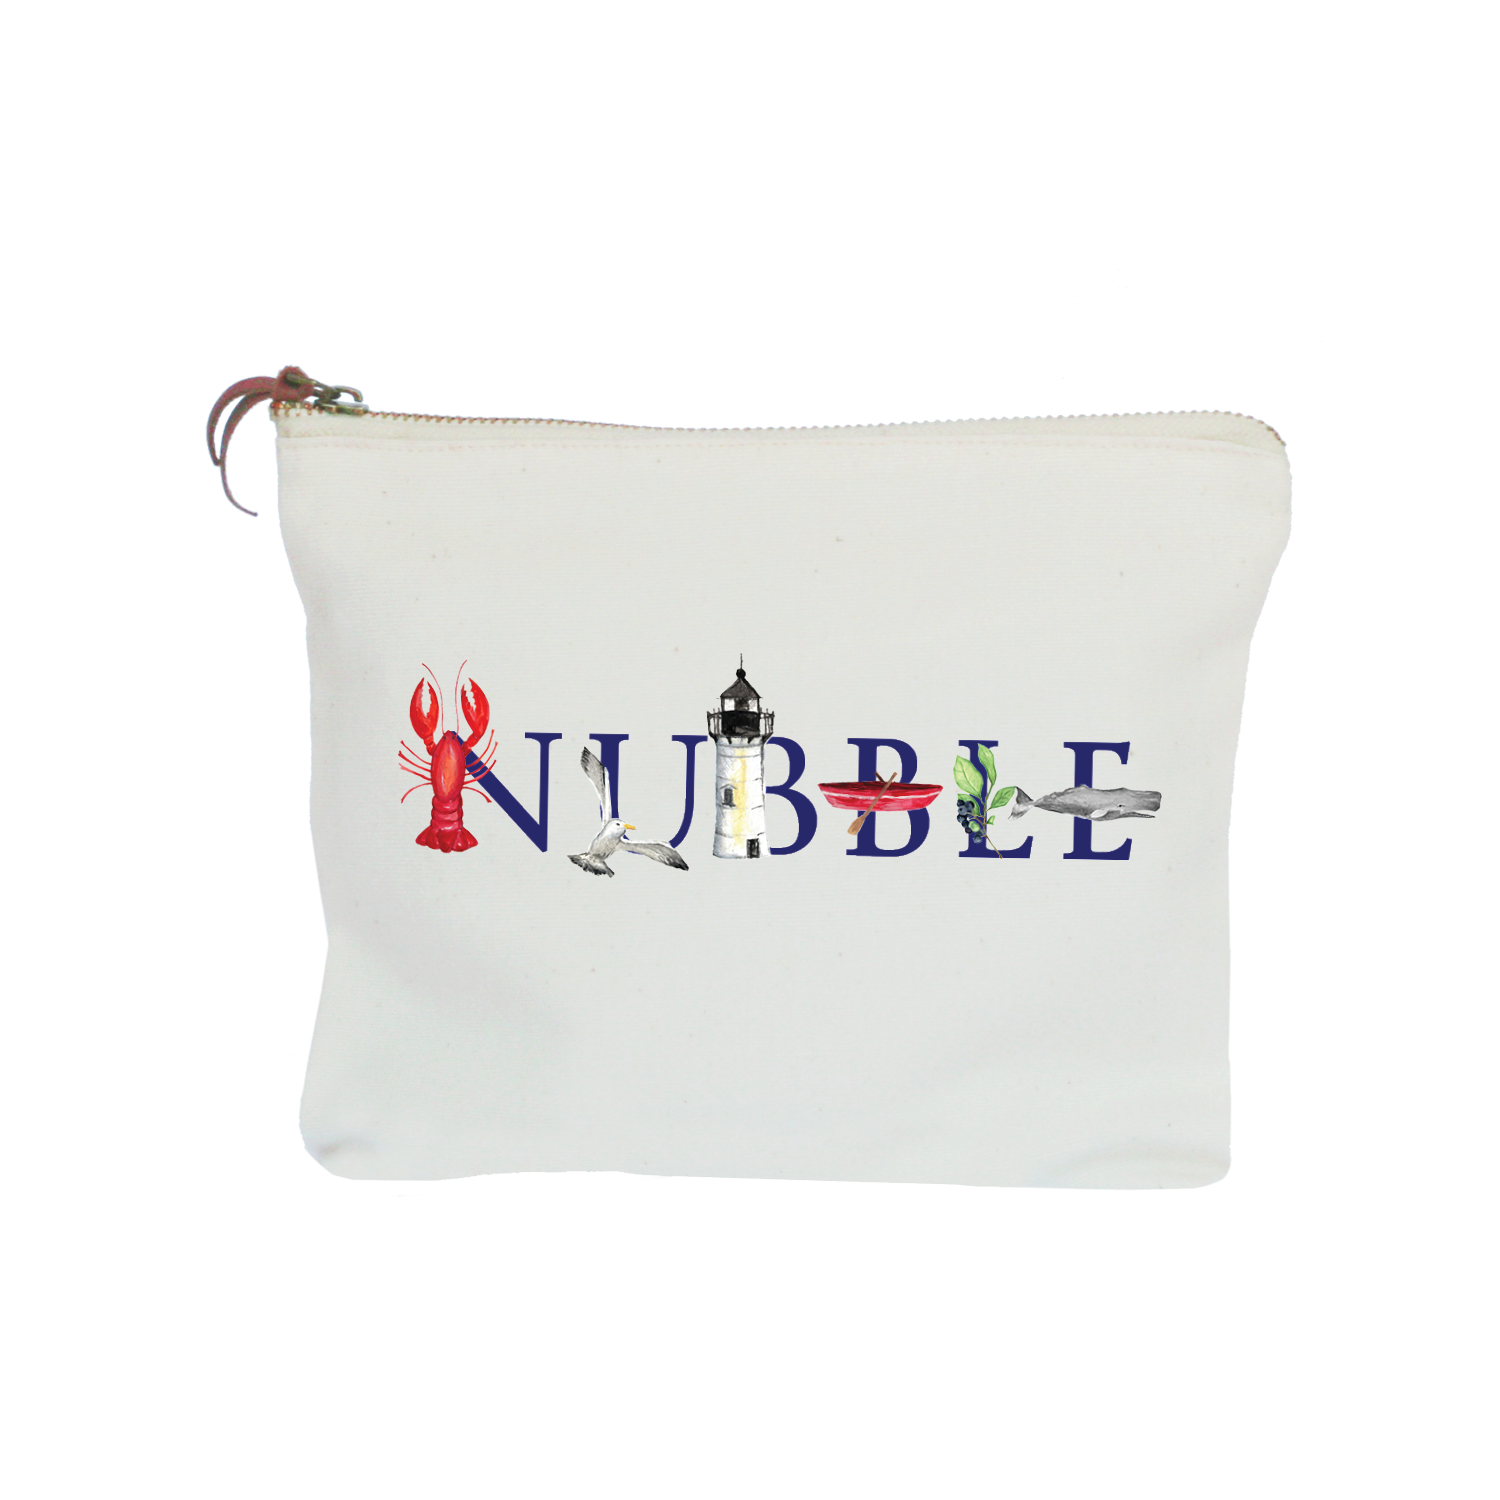 nubble zipper pouch